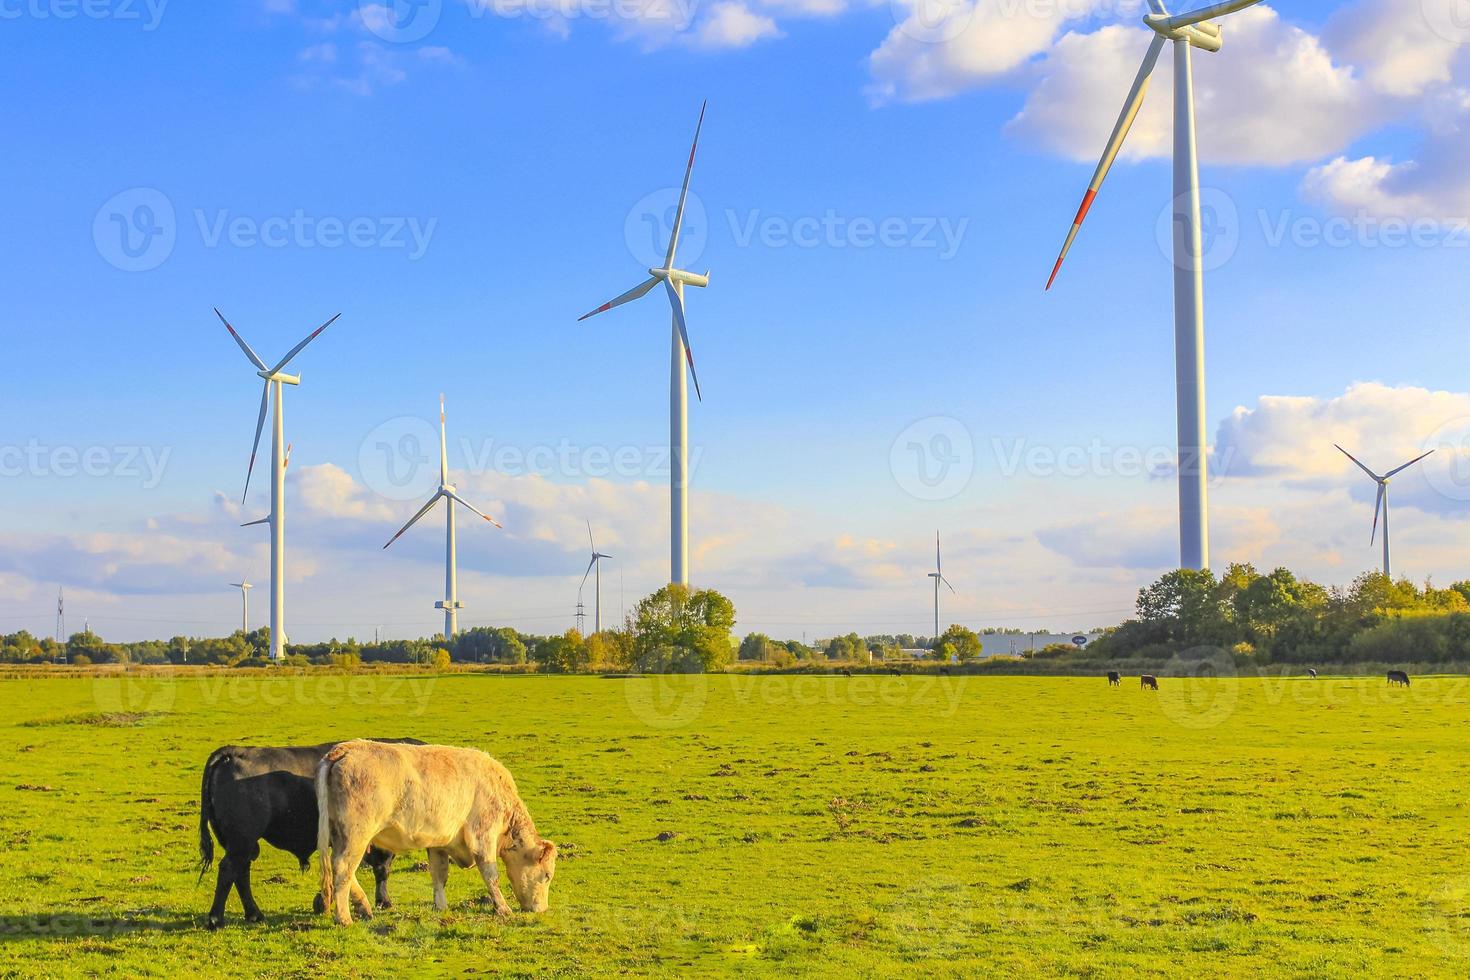 campo agrícola do norte da Alemanha com vacas natureza paisagem panorama alemanha. foto